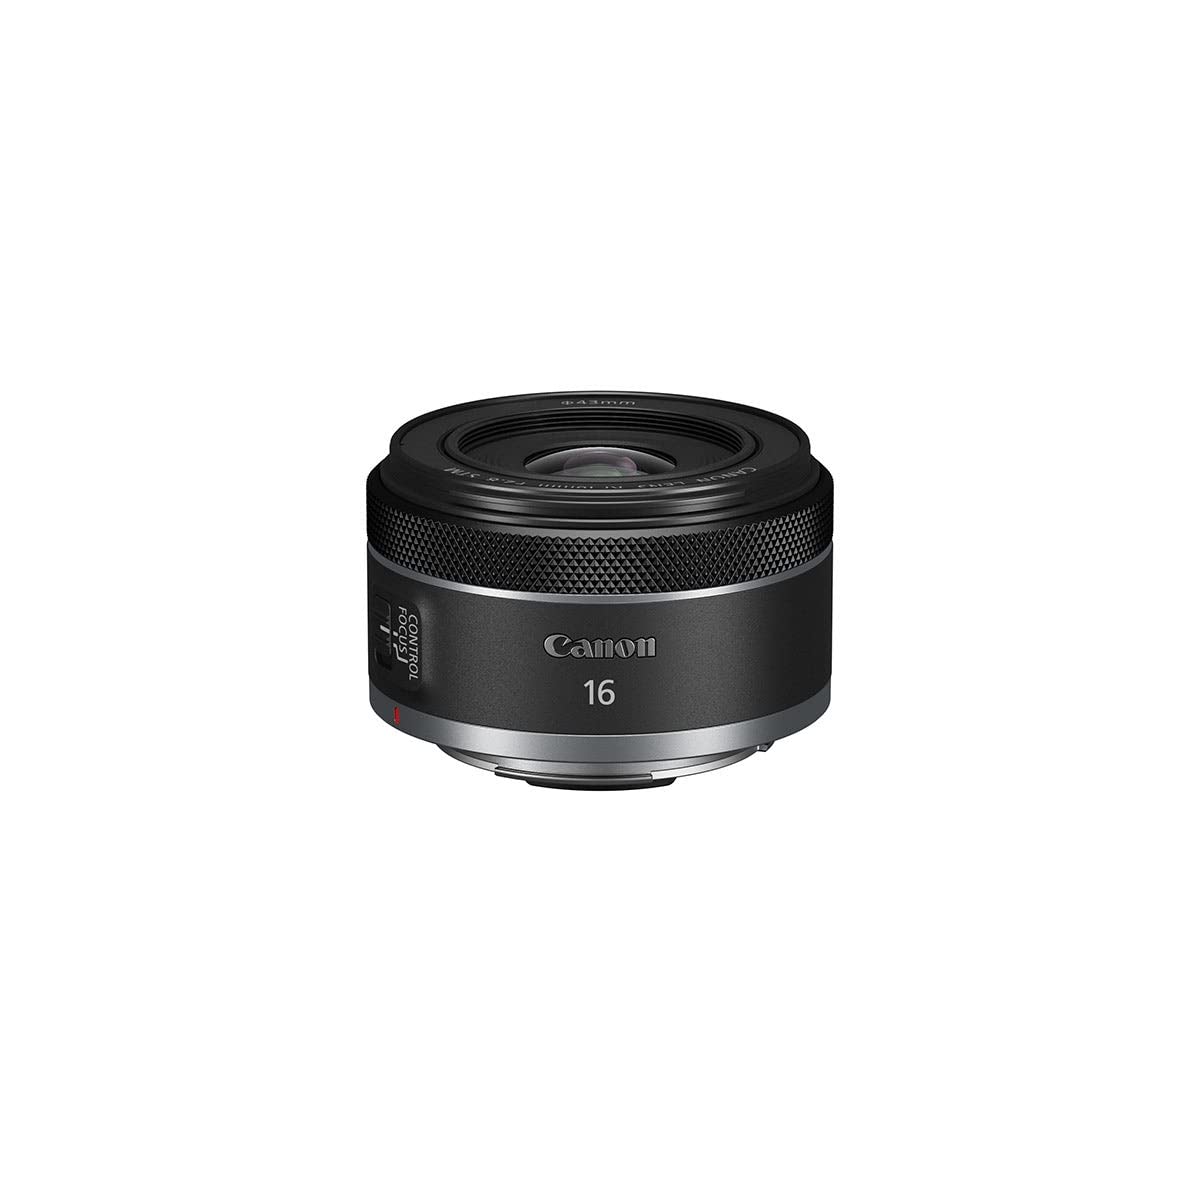 Canon Objektiv RF 16mm F2.8 STM Ultra Weitwinkel-Objektiv für Kameras der Canon EOS R Serie (Festbrennweite, Leiser STM-Autofokusmotor, hohe Lichtstärke, 165g), schwarz